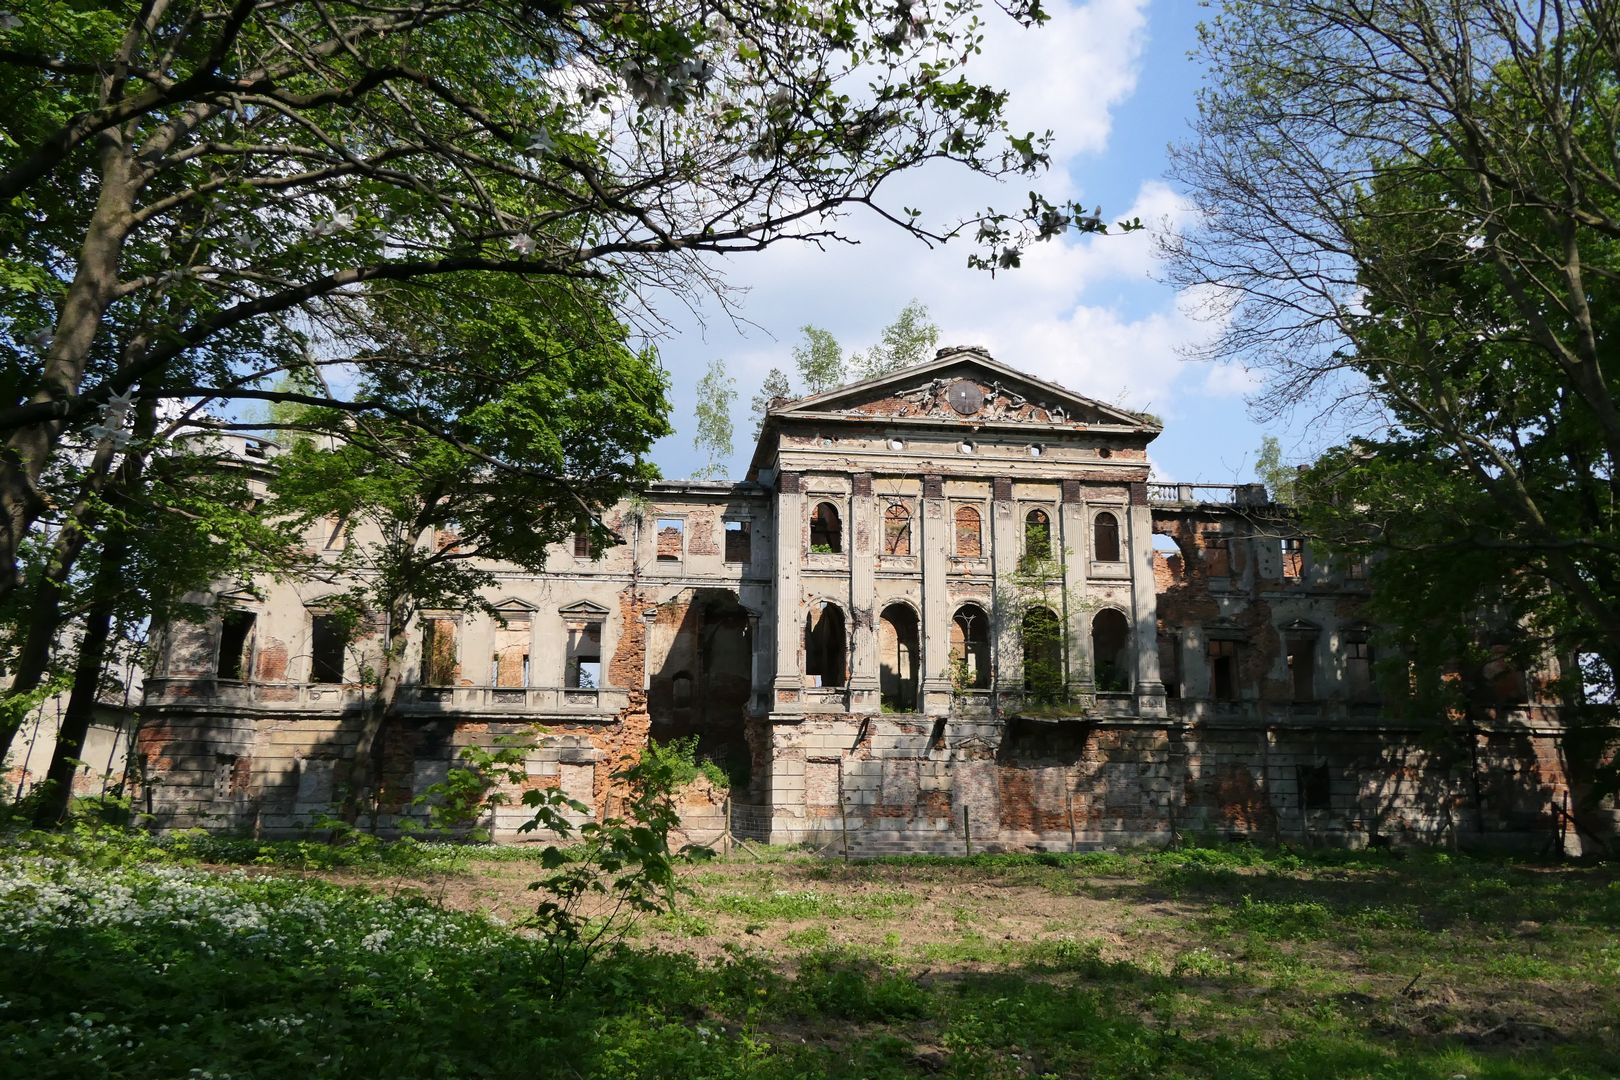 Pałac w Sławikowie widziany od strony parku. Na tympanonie można dostrzec pozostałości zegara słonecznego, zaś na prawo od niego - reszki balustrady. Dach pałacu był płaski i wykorzystywano go jako taras.